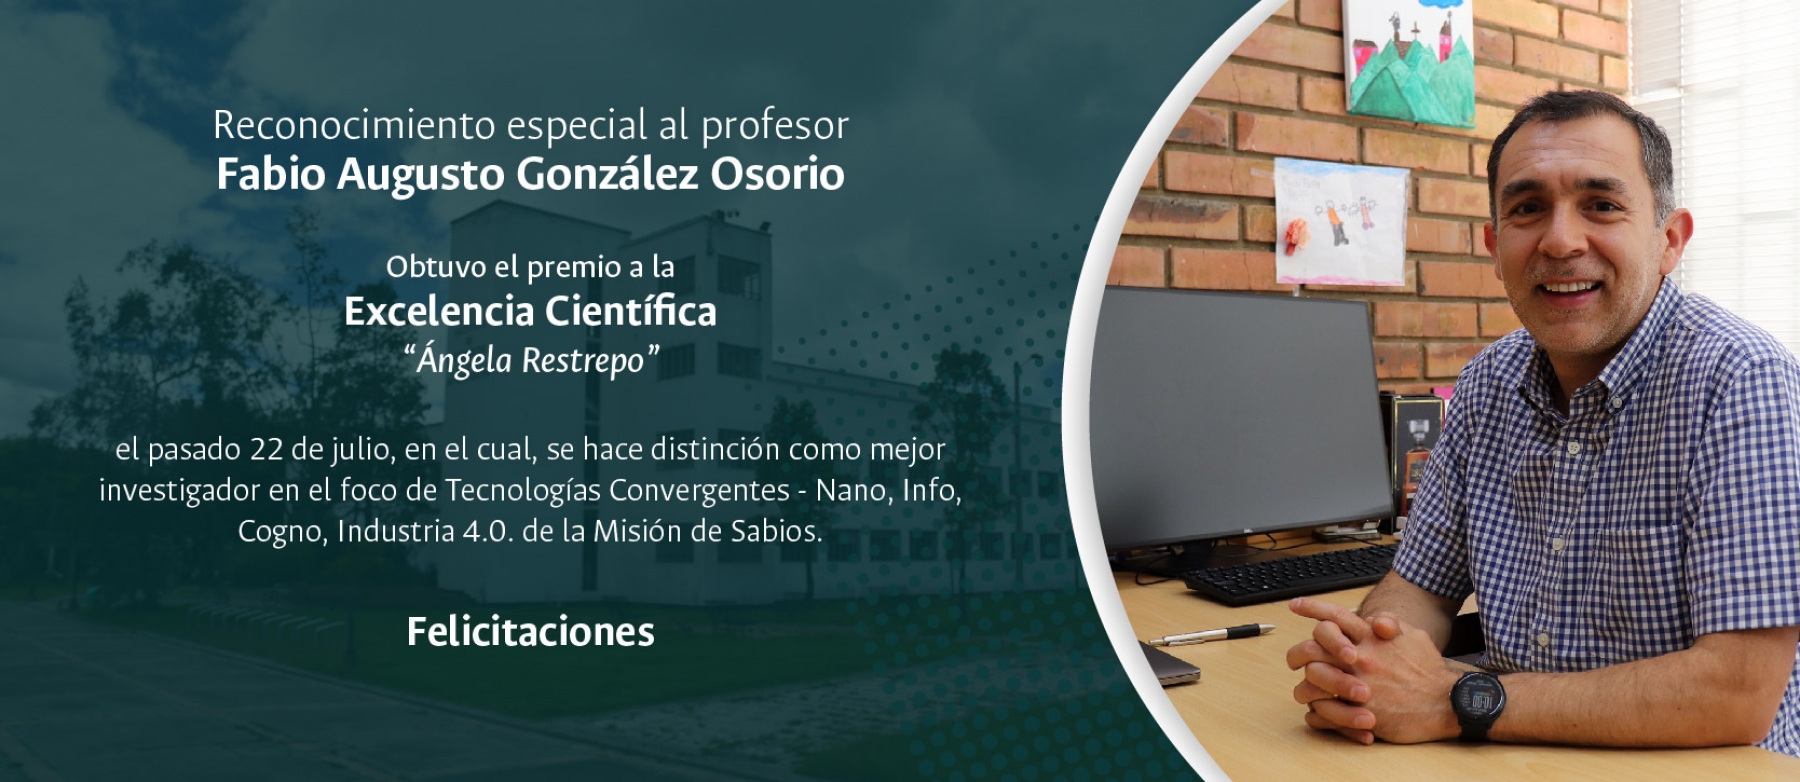 Reconocimiento a la excelencia científica a nivel nacional “Ángela Restrepo” al profesor Fabio González Osorio